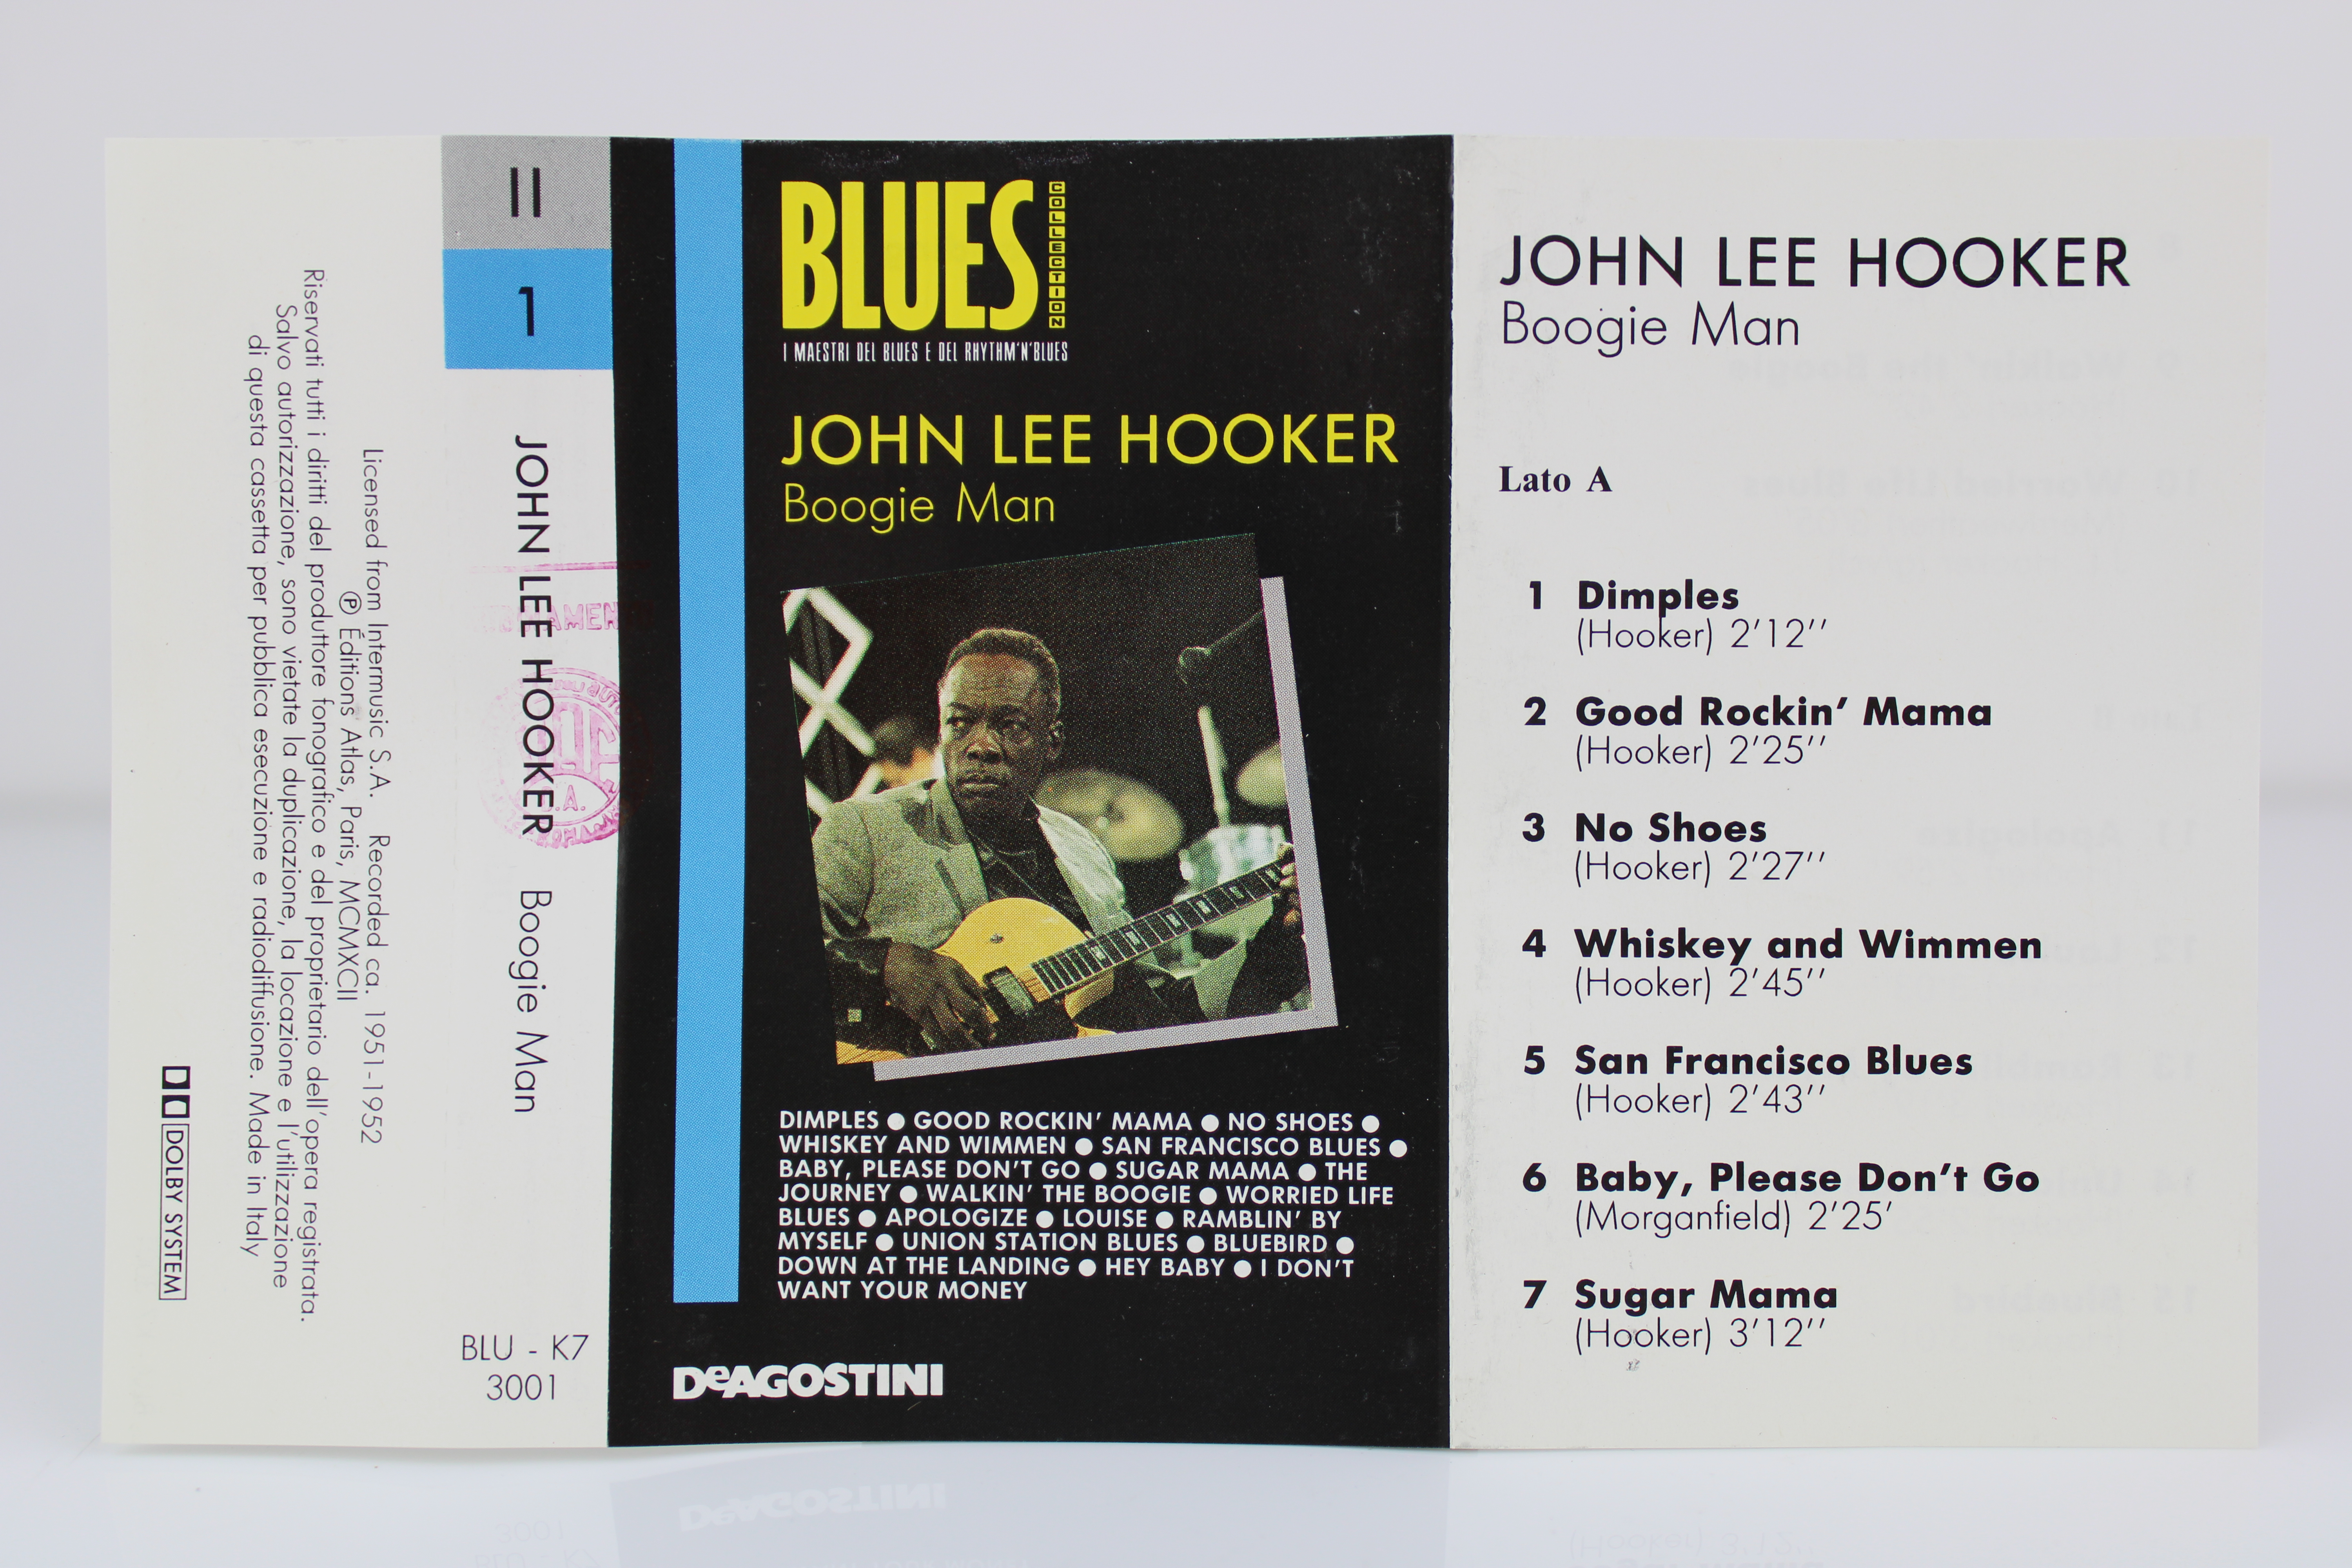 John Lee Hooker ‎Boogie Man Compilation BLU-K7 3001 Musicassetta MC Cassette